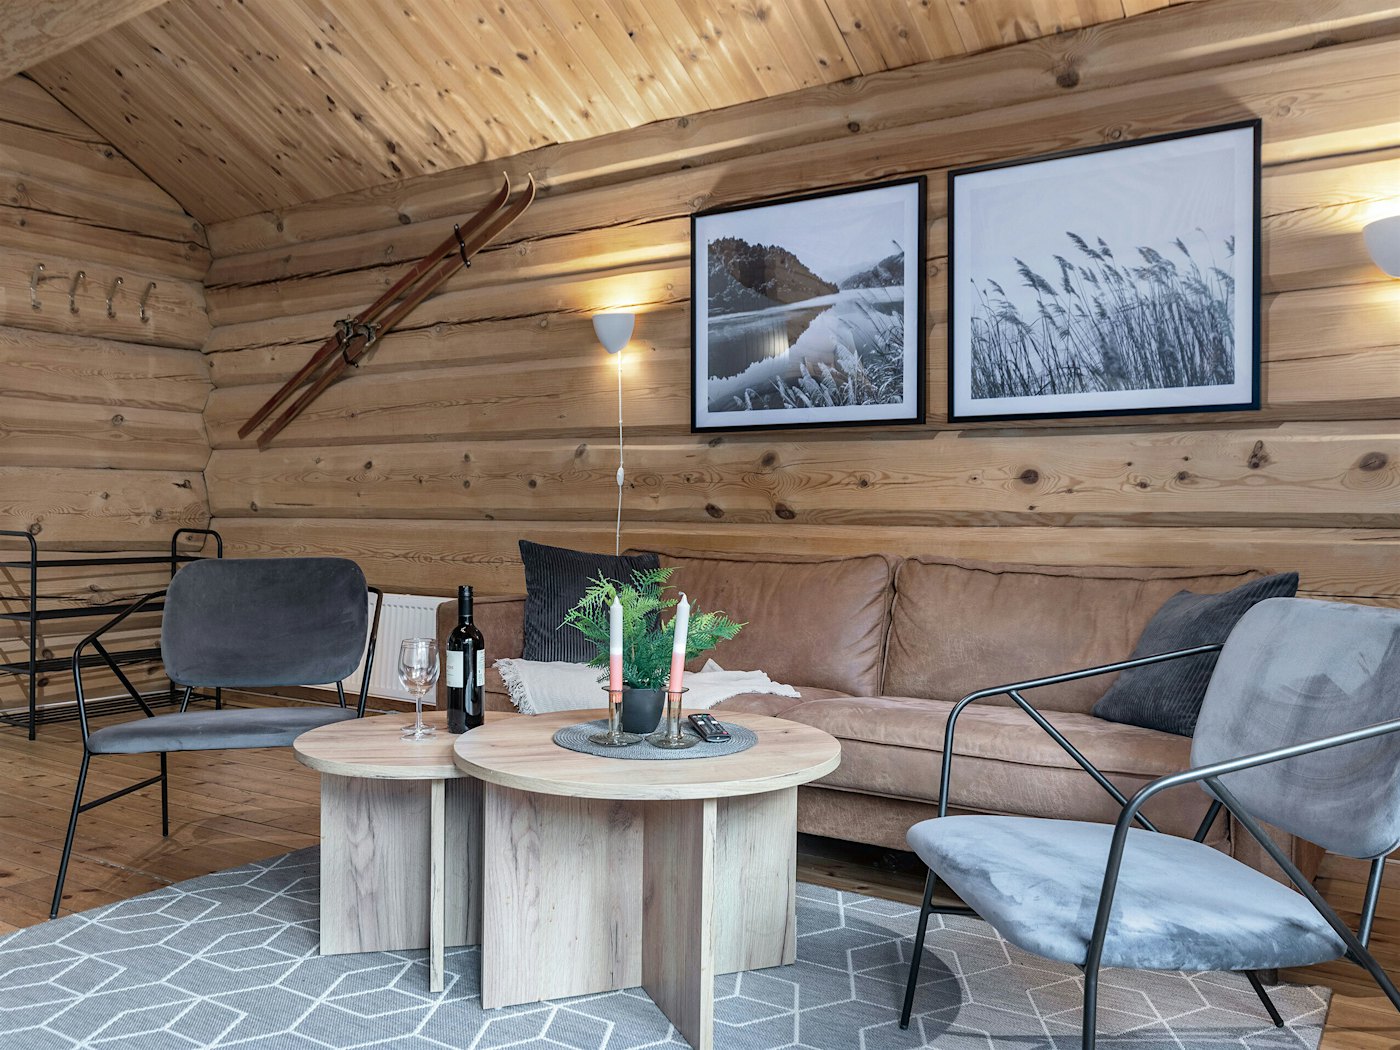 Dreifarbiges Wohnzimmer, modern eingerichtet mit Sofa, Couchtisch und Stühlen. Zwei große Bilder und ein Paar Ski an der Wand. Foto